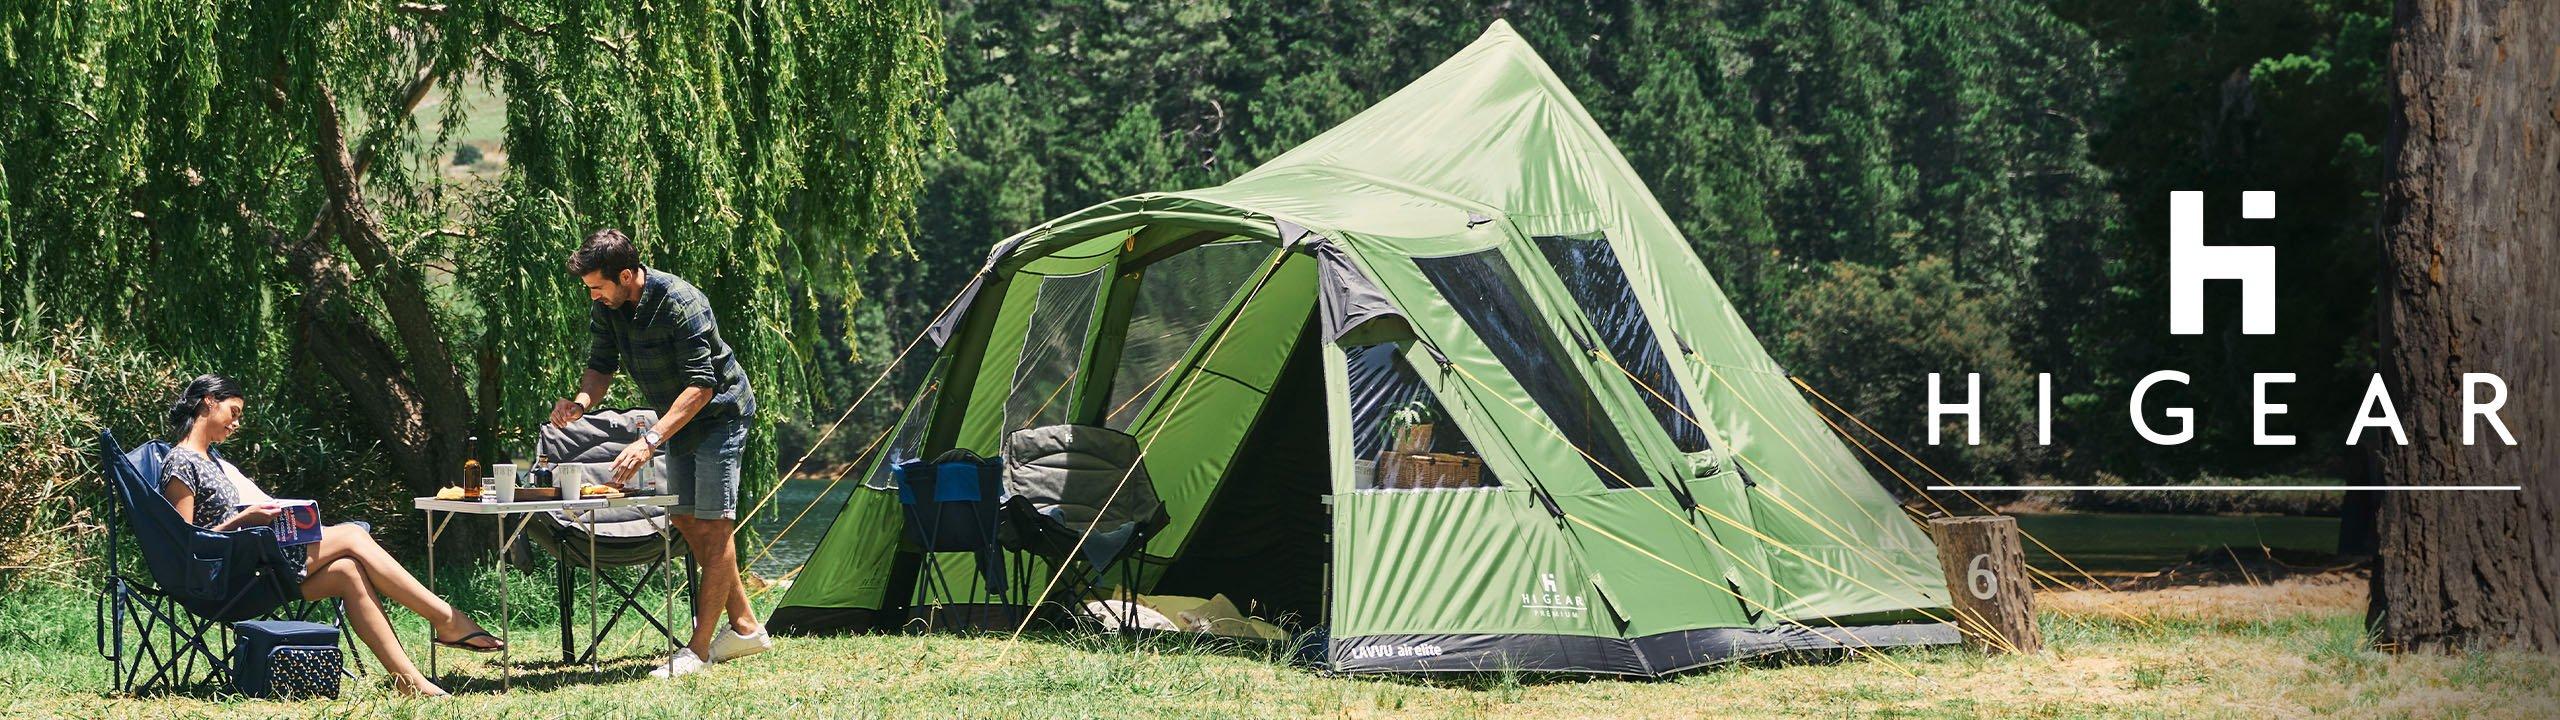 Hi Gear Tents